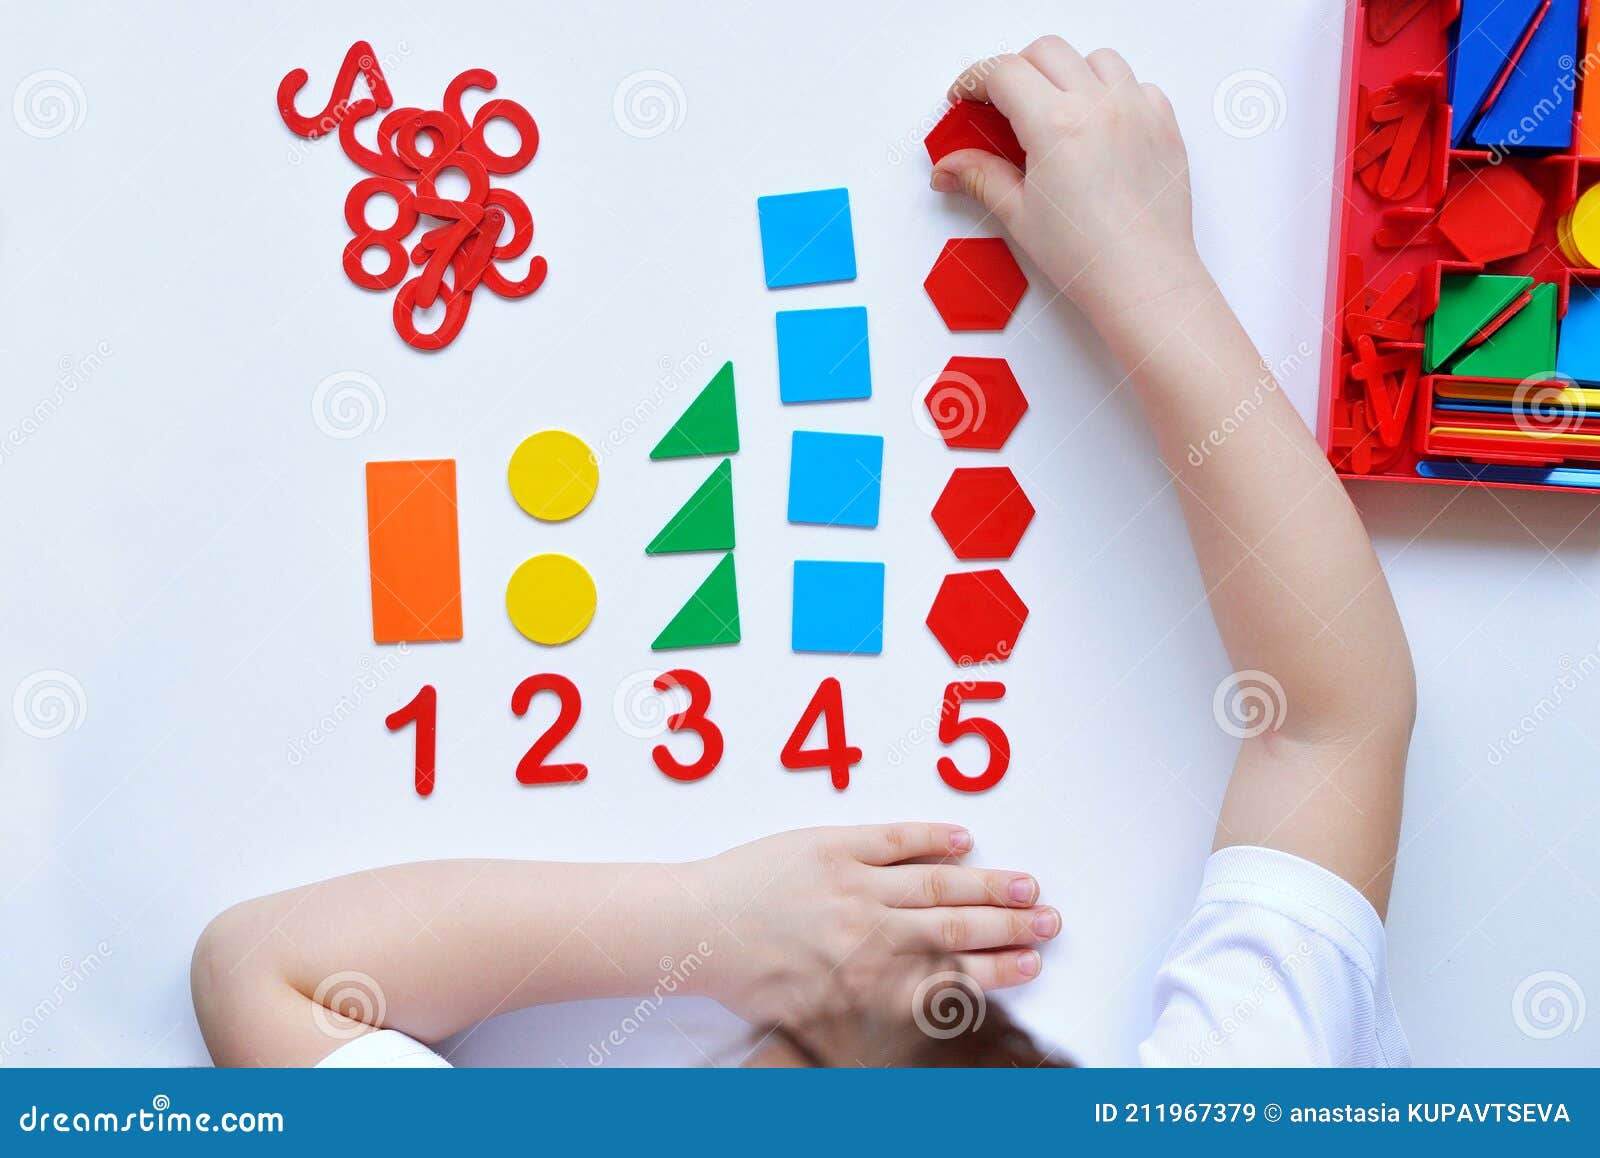 Adição e Subtração Matemática Montessori,números magnéticos para crianças |  Brinquedos educativos jogos matemáticos para o jardim infância, jogos